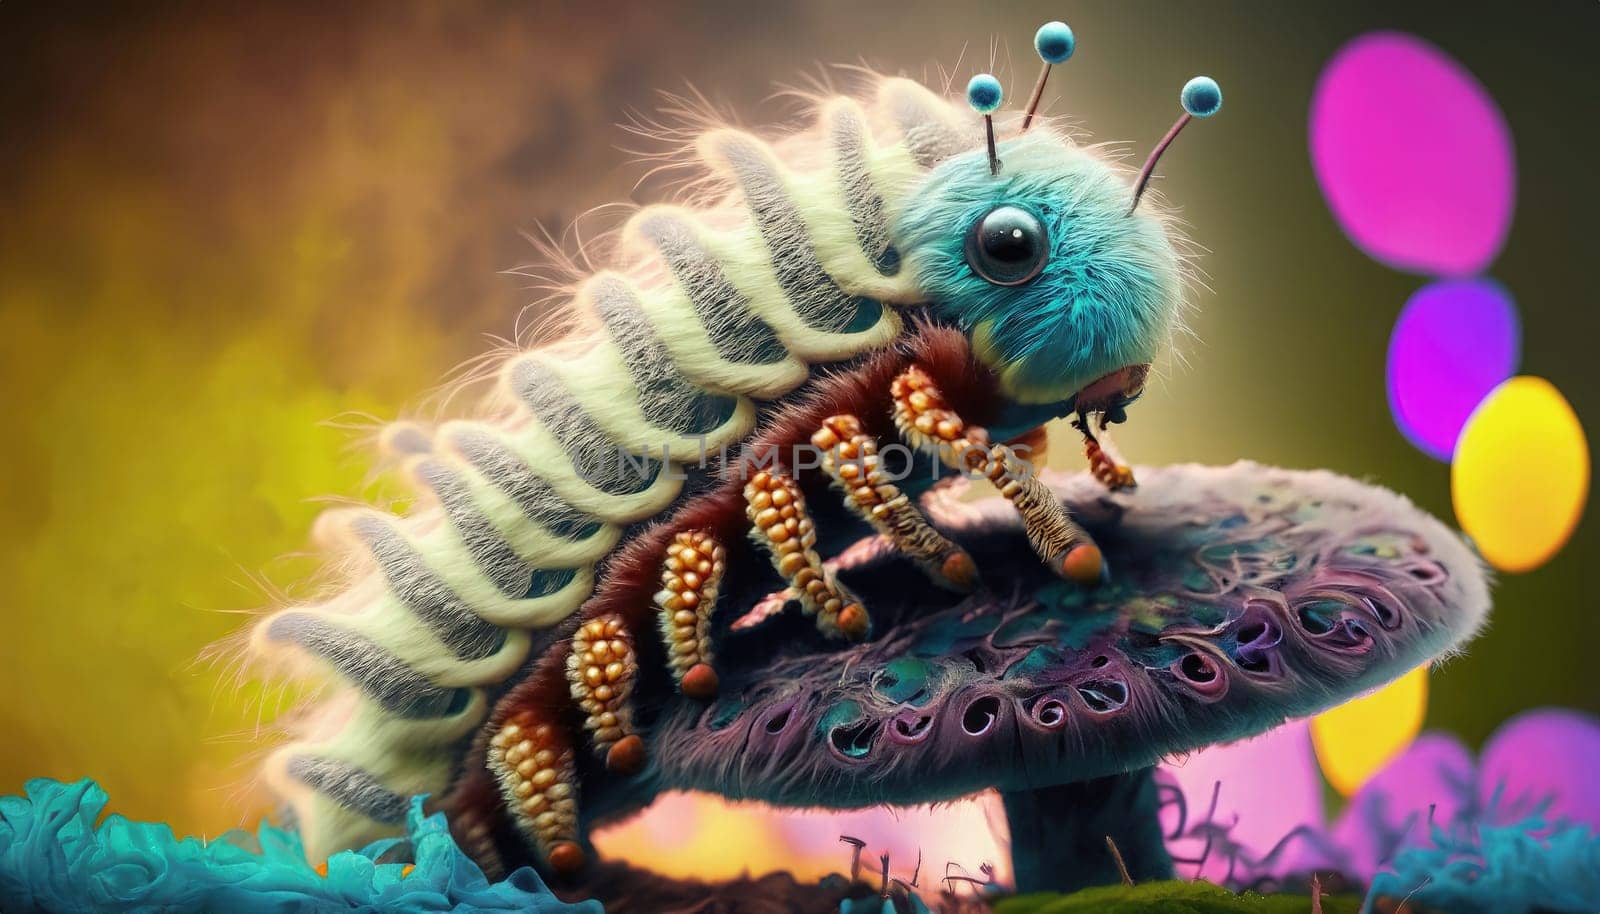 Fantasy caterpillar on a mushroom. 3d render illustration. AI Generated.